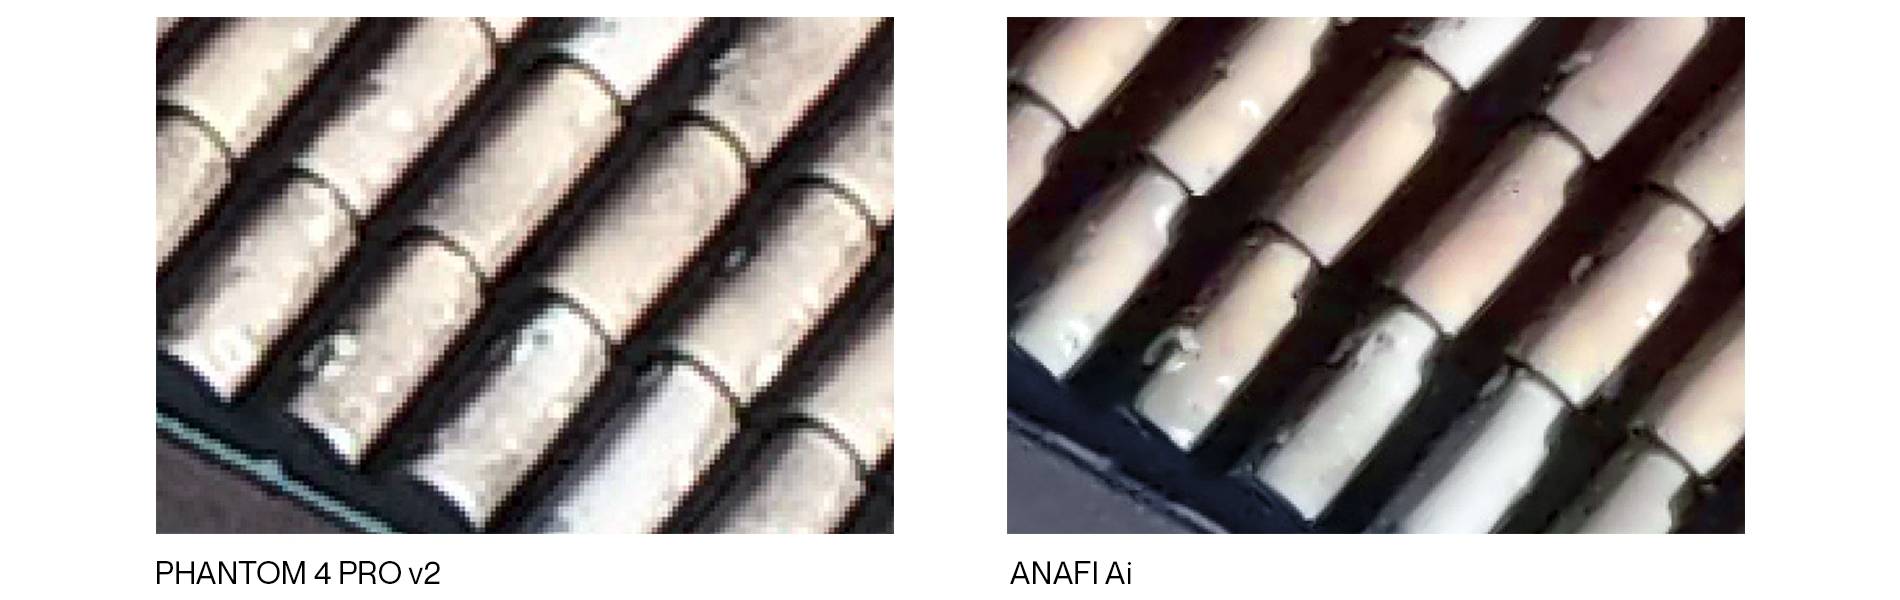 ANAFI Ai roof inspection